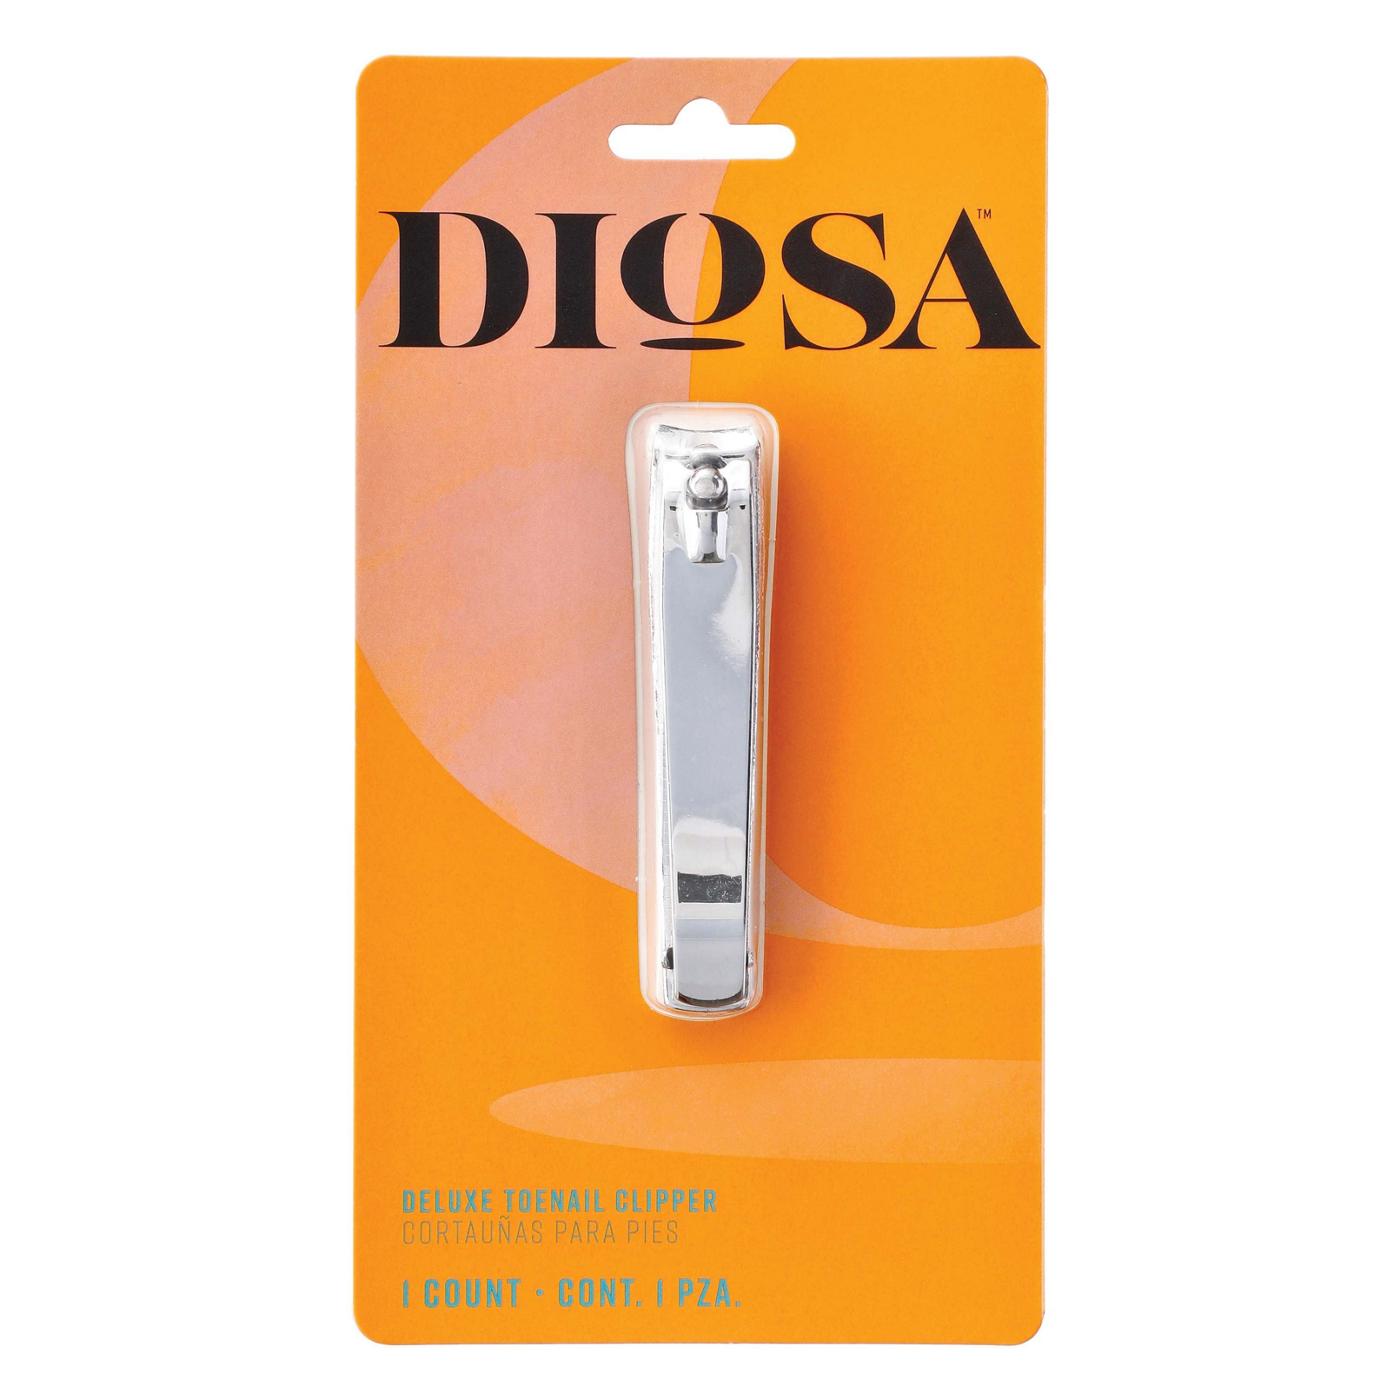 Diosa Deluxe Toenail Clipper; image 1 of 2